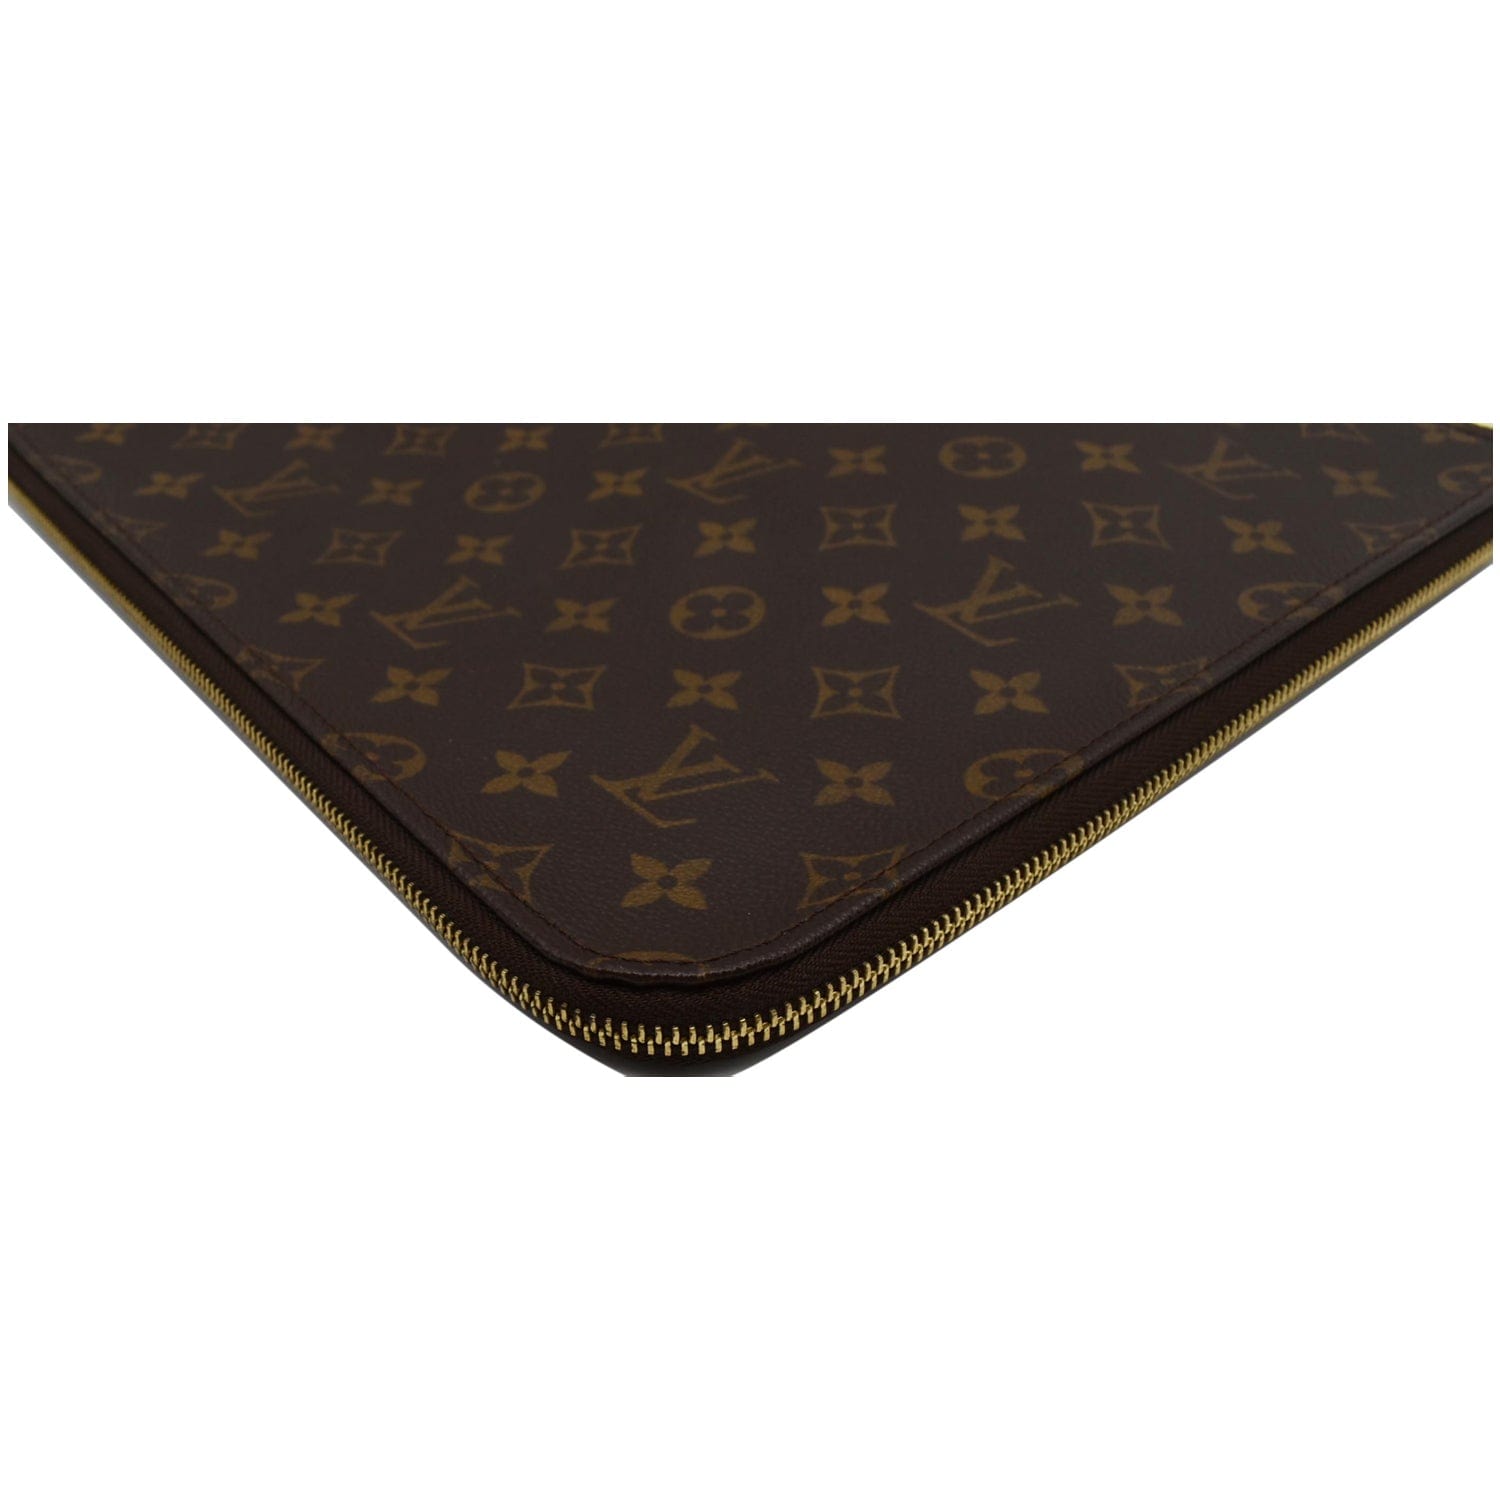 Louis Vuitton Monogram Poche Documents Portfolio Business Bag